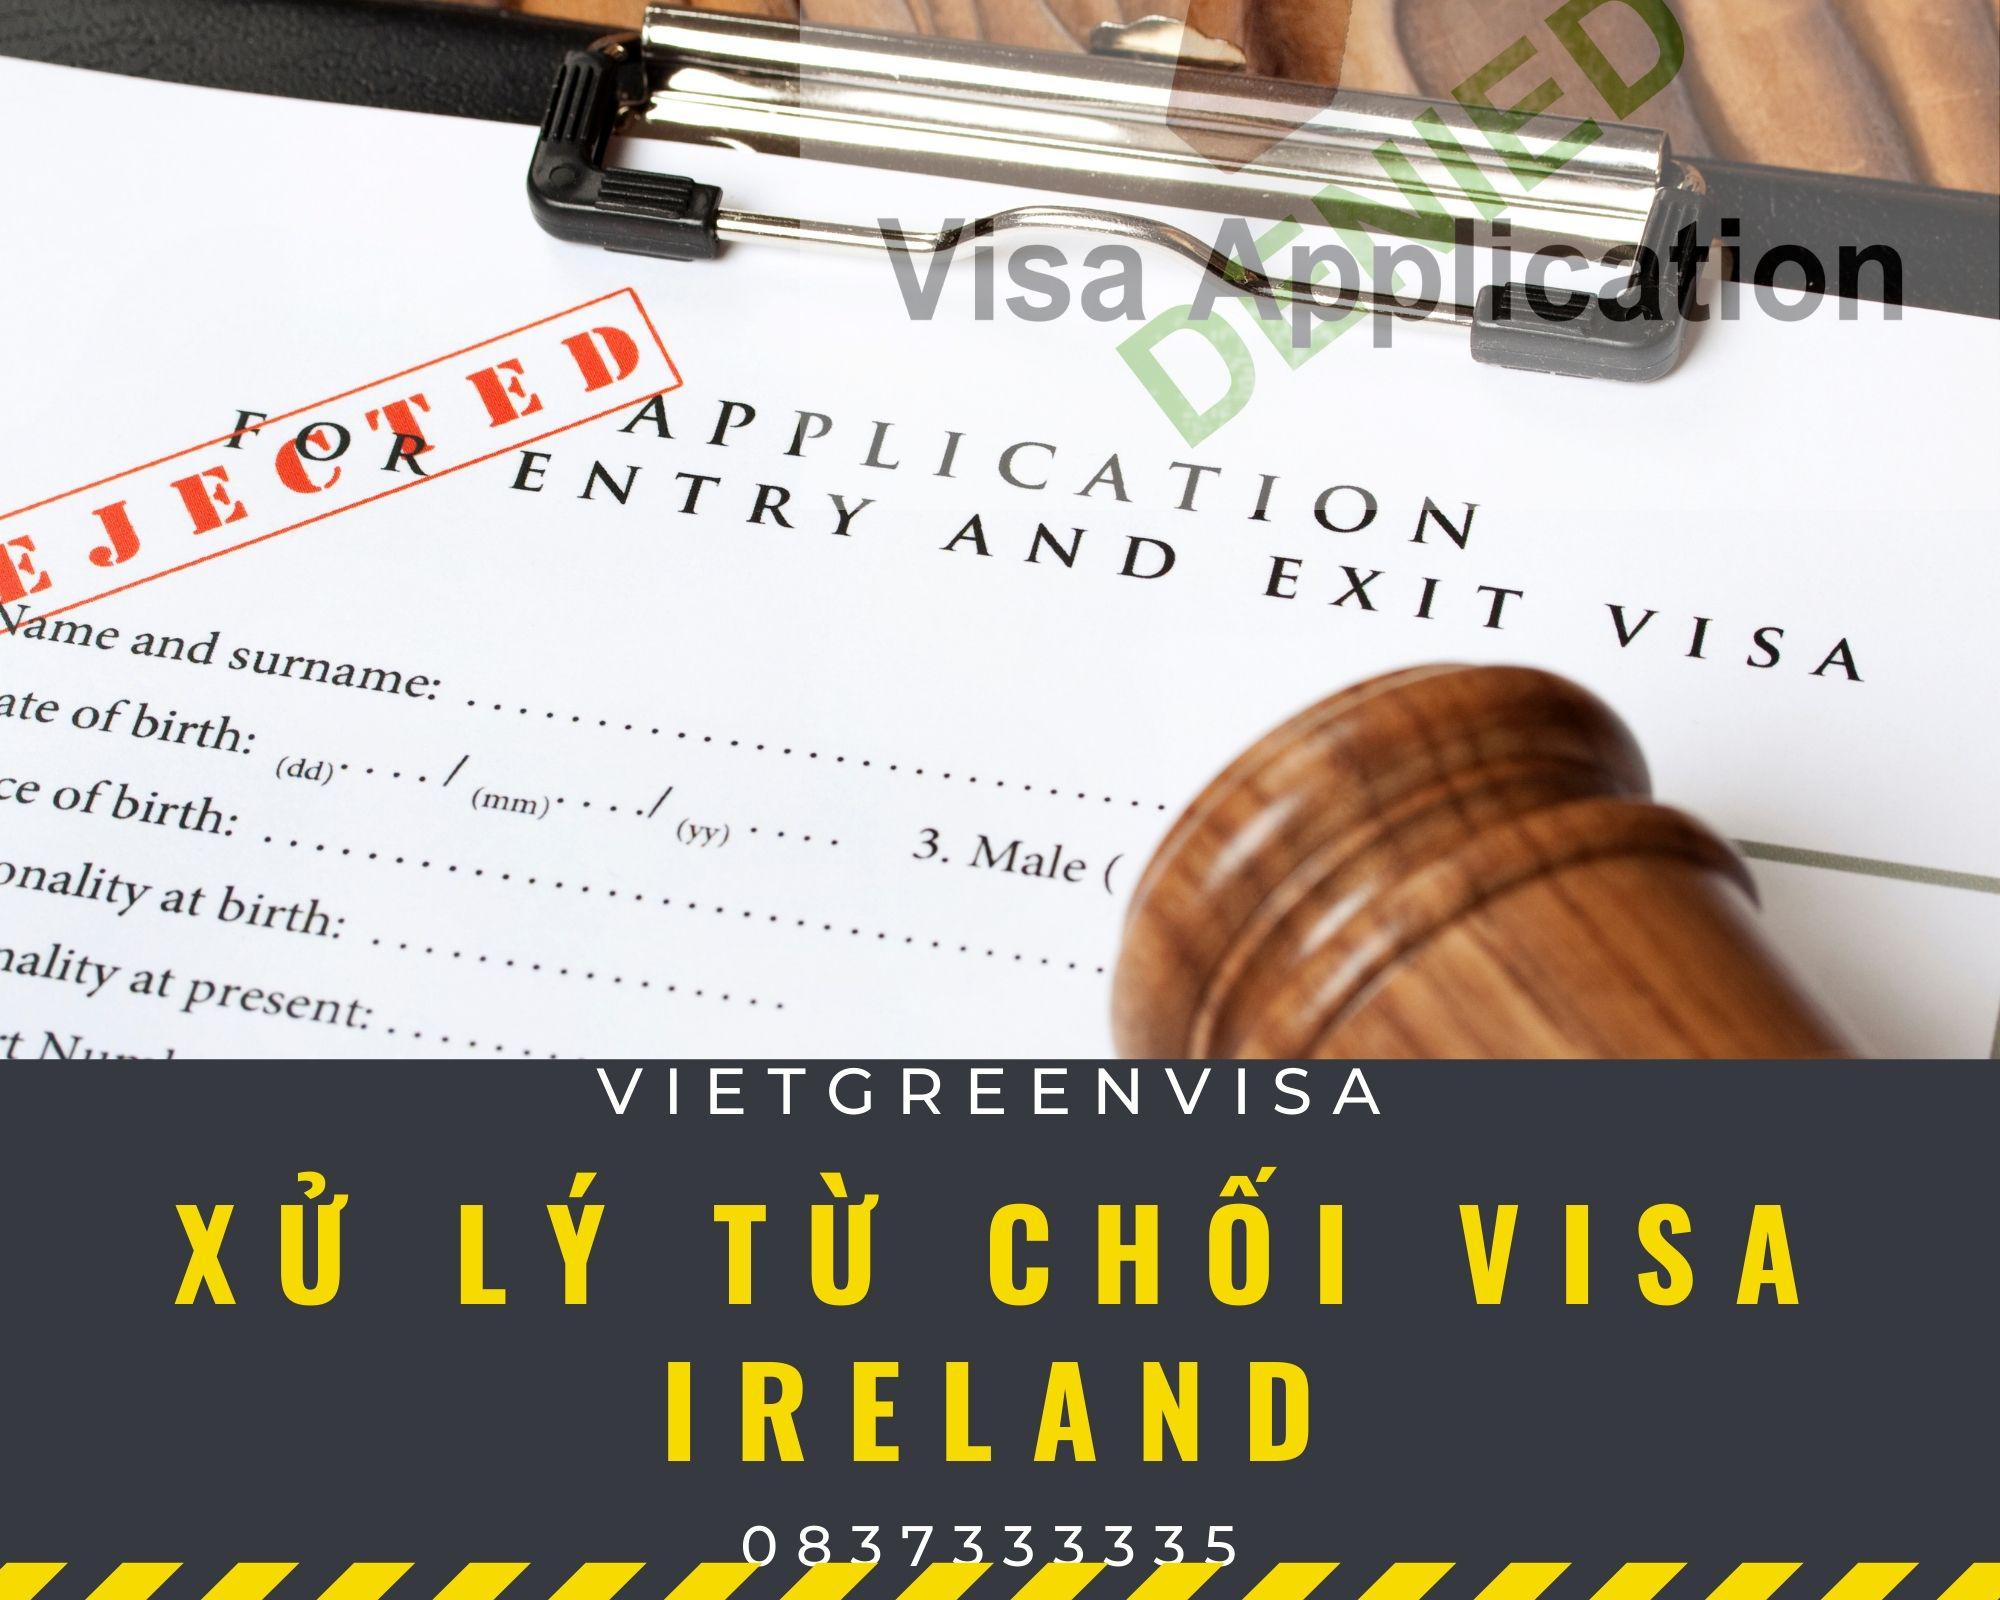 Dịch vụ xử lý visa Ireland bị từ chối nhanh chóng